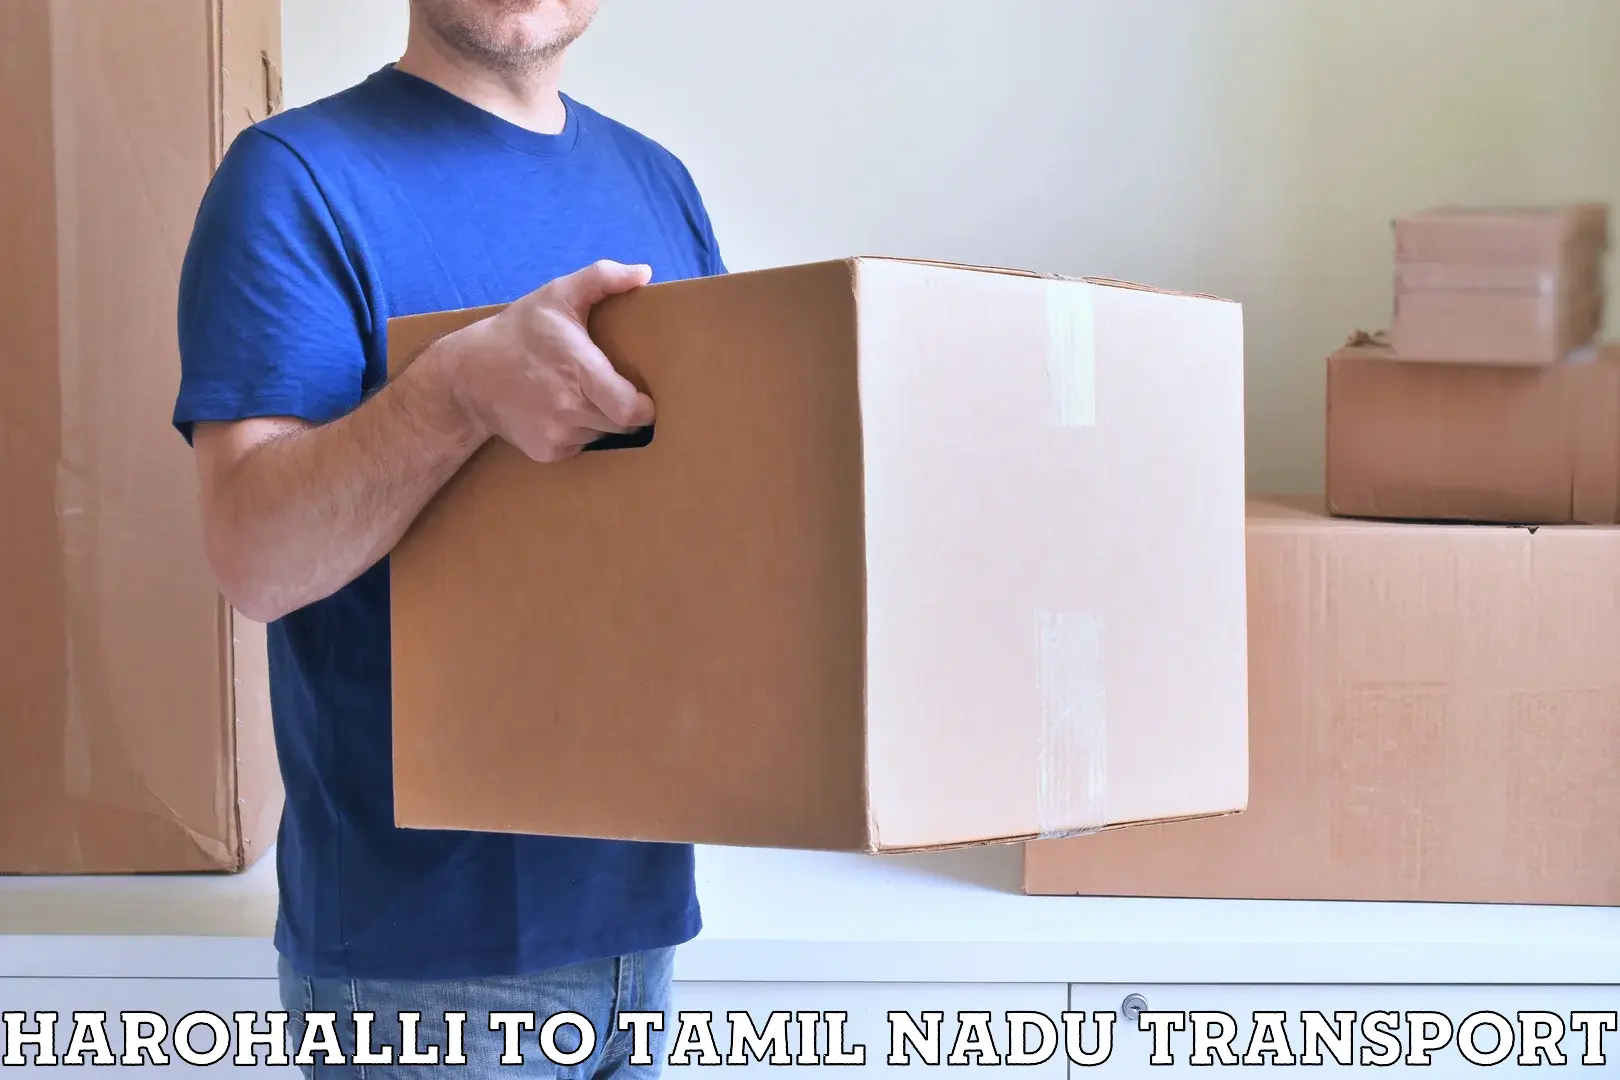 Online transport service Harohalli to Tiruvannamalai